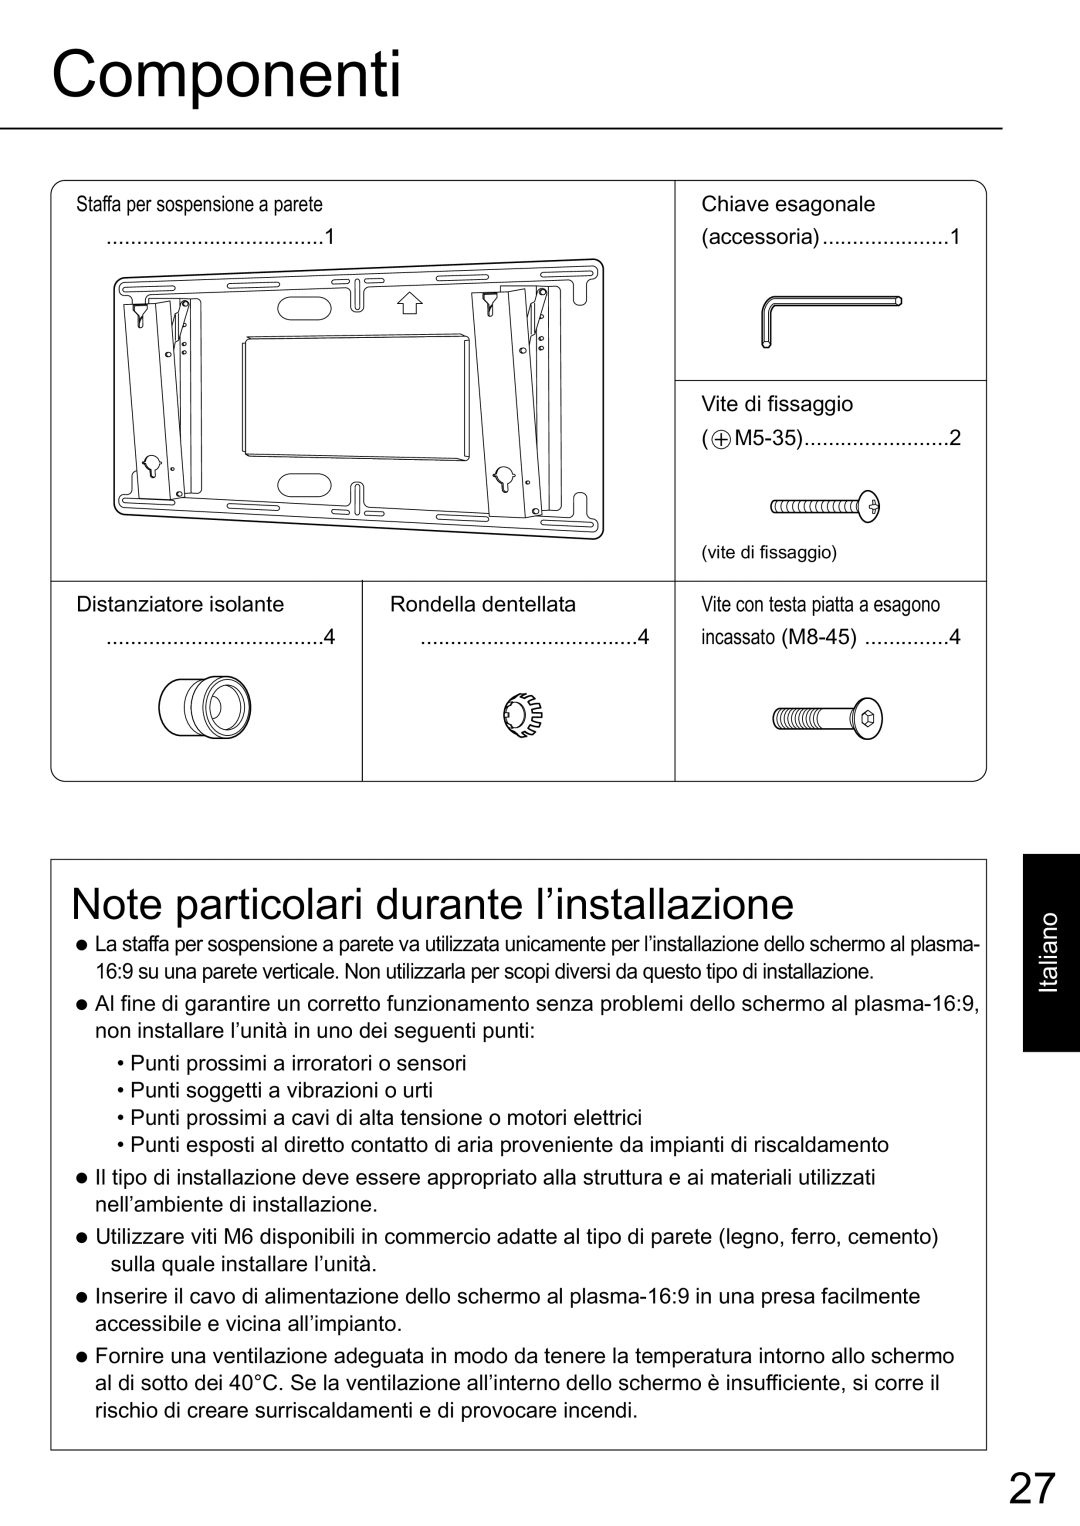 JVC TS-C50P2G, TS-C50P6G manual Componenti, Note particolari durante l’installazione, Italiano 